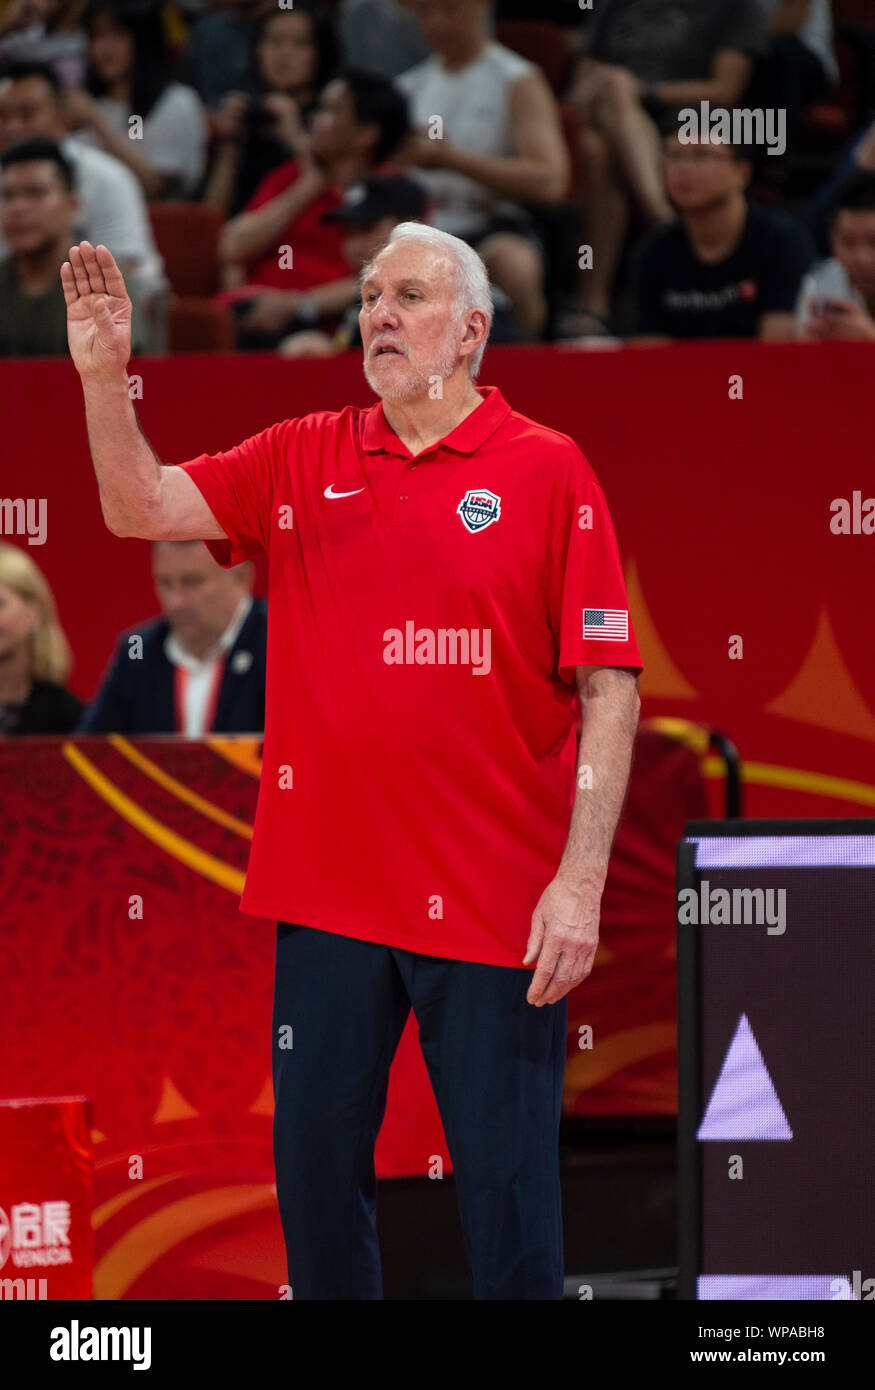 Coupe du Monde de la FIBA Basket-ball 2019 en Chine. USA vs Coupe du Monde de Basket-ball 2019 GreeceFIBA Shenzhen. USA's coach, Gregg POPOVICH, Alamy Image Banque D'Images